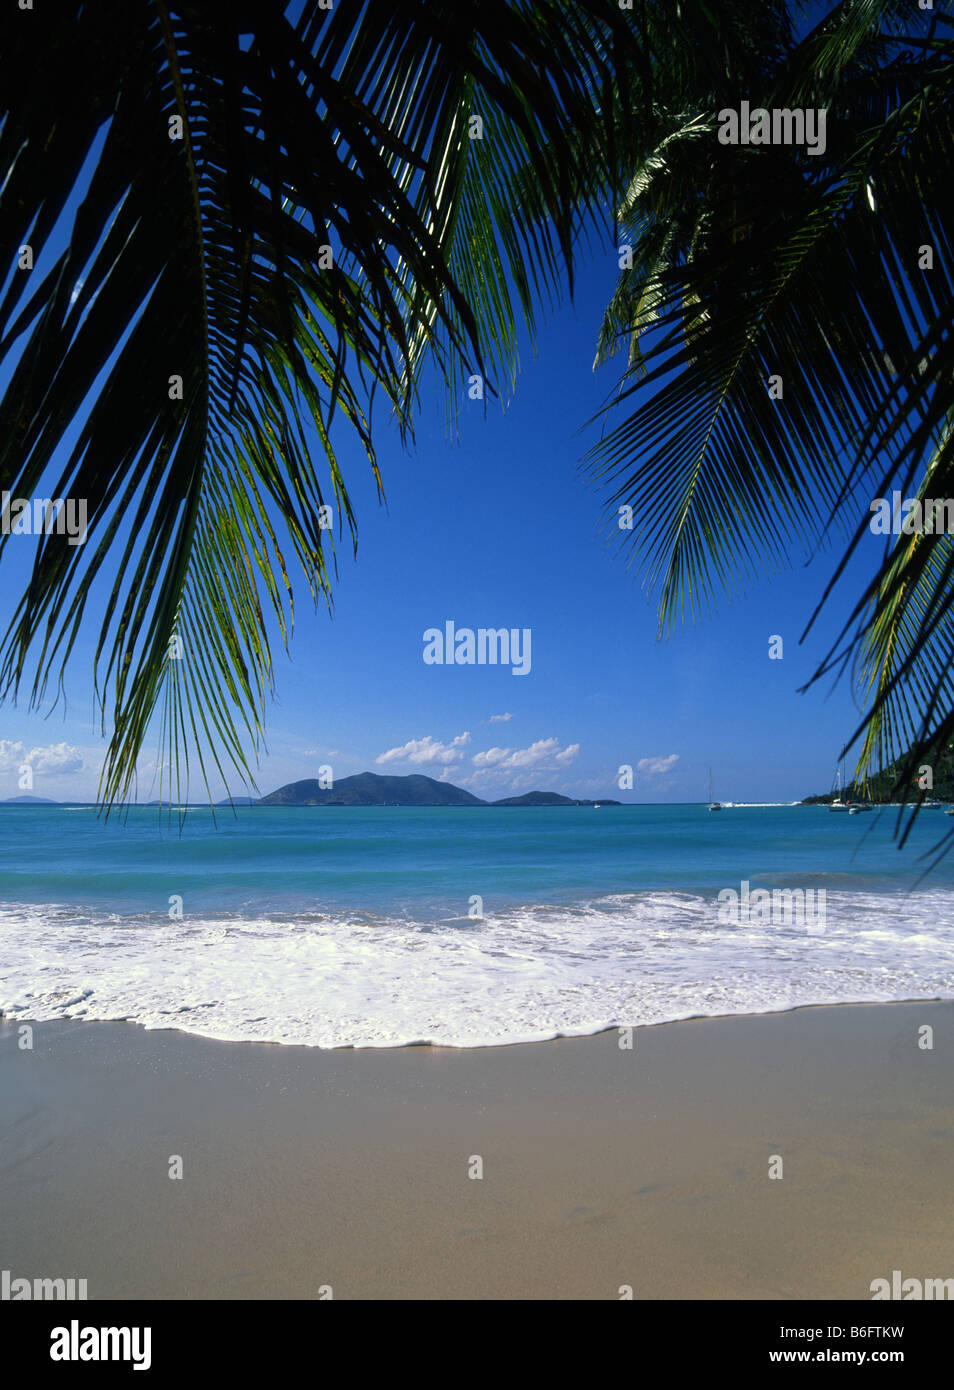 Palmenblättern Überhang feinen sauberen Sandstrand urlaub Strand mit Surf von türkisblauem Meer tropische Cane Garden Bay Beach British Virgin Islands gewaschen Stockfoto